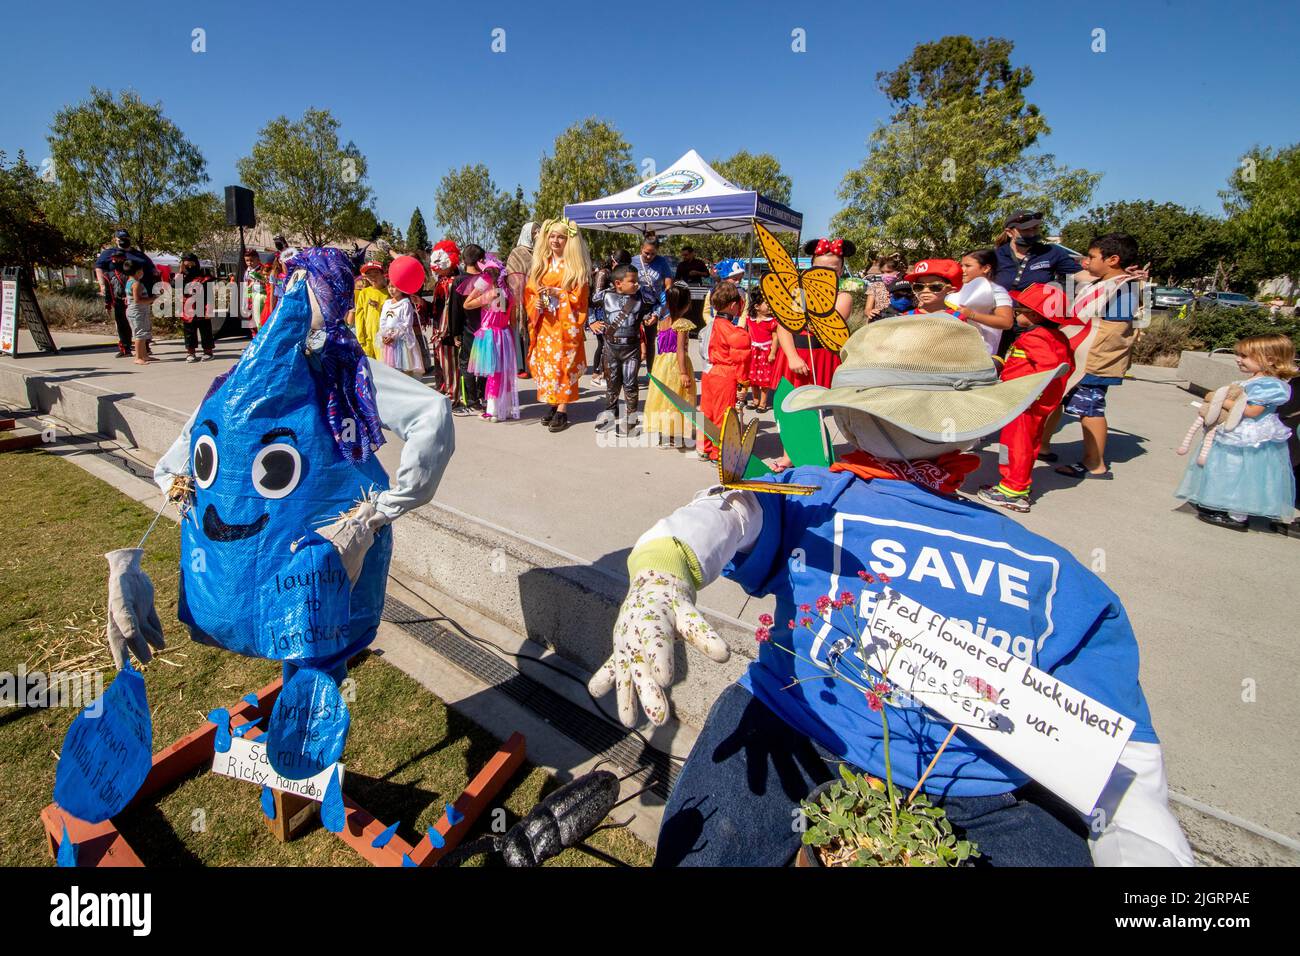 Des défileurs imaginatifs symbolisent la nécessité d'économiser de l'eau  lors d'un événement de costume sur le thème de l'écologie dans un parc de  Costa Mesa, Californie Photo Stock - Alamy